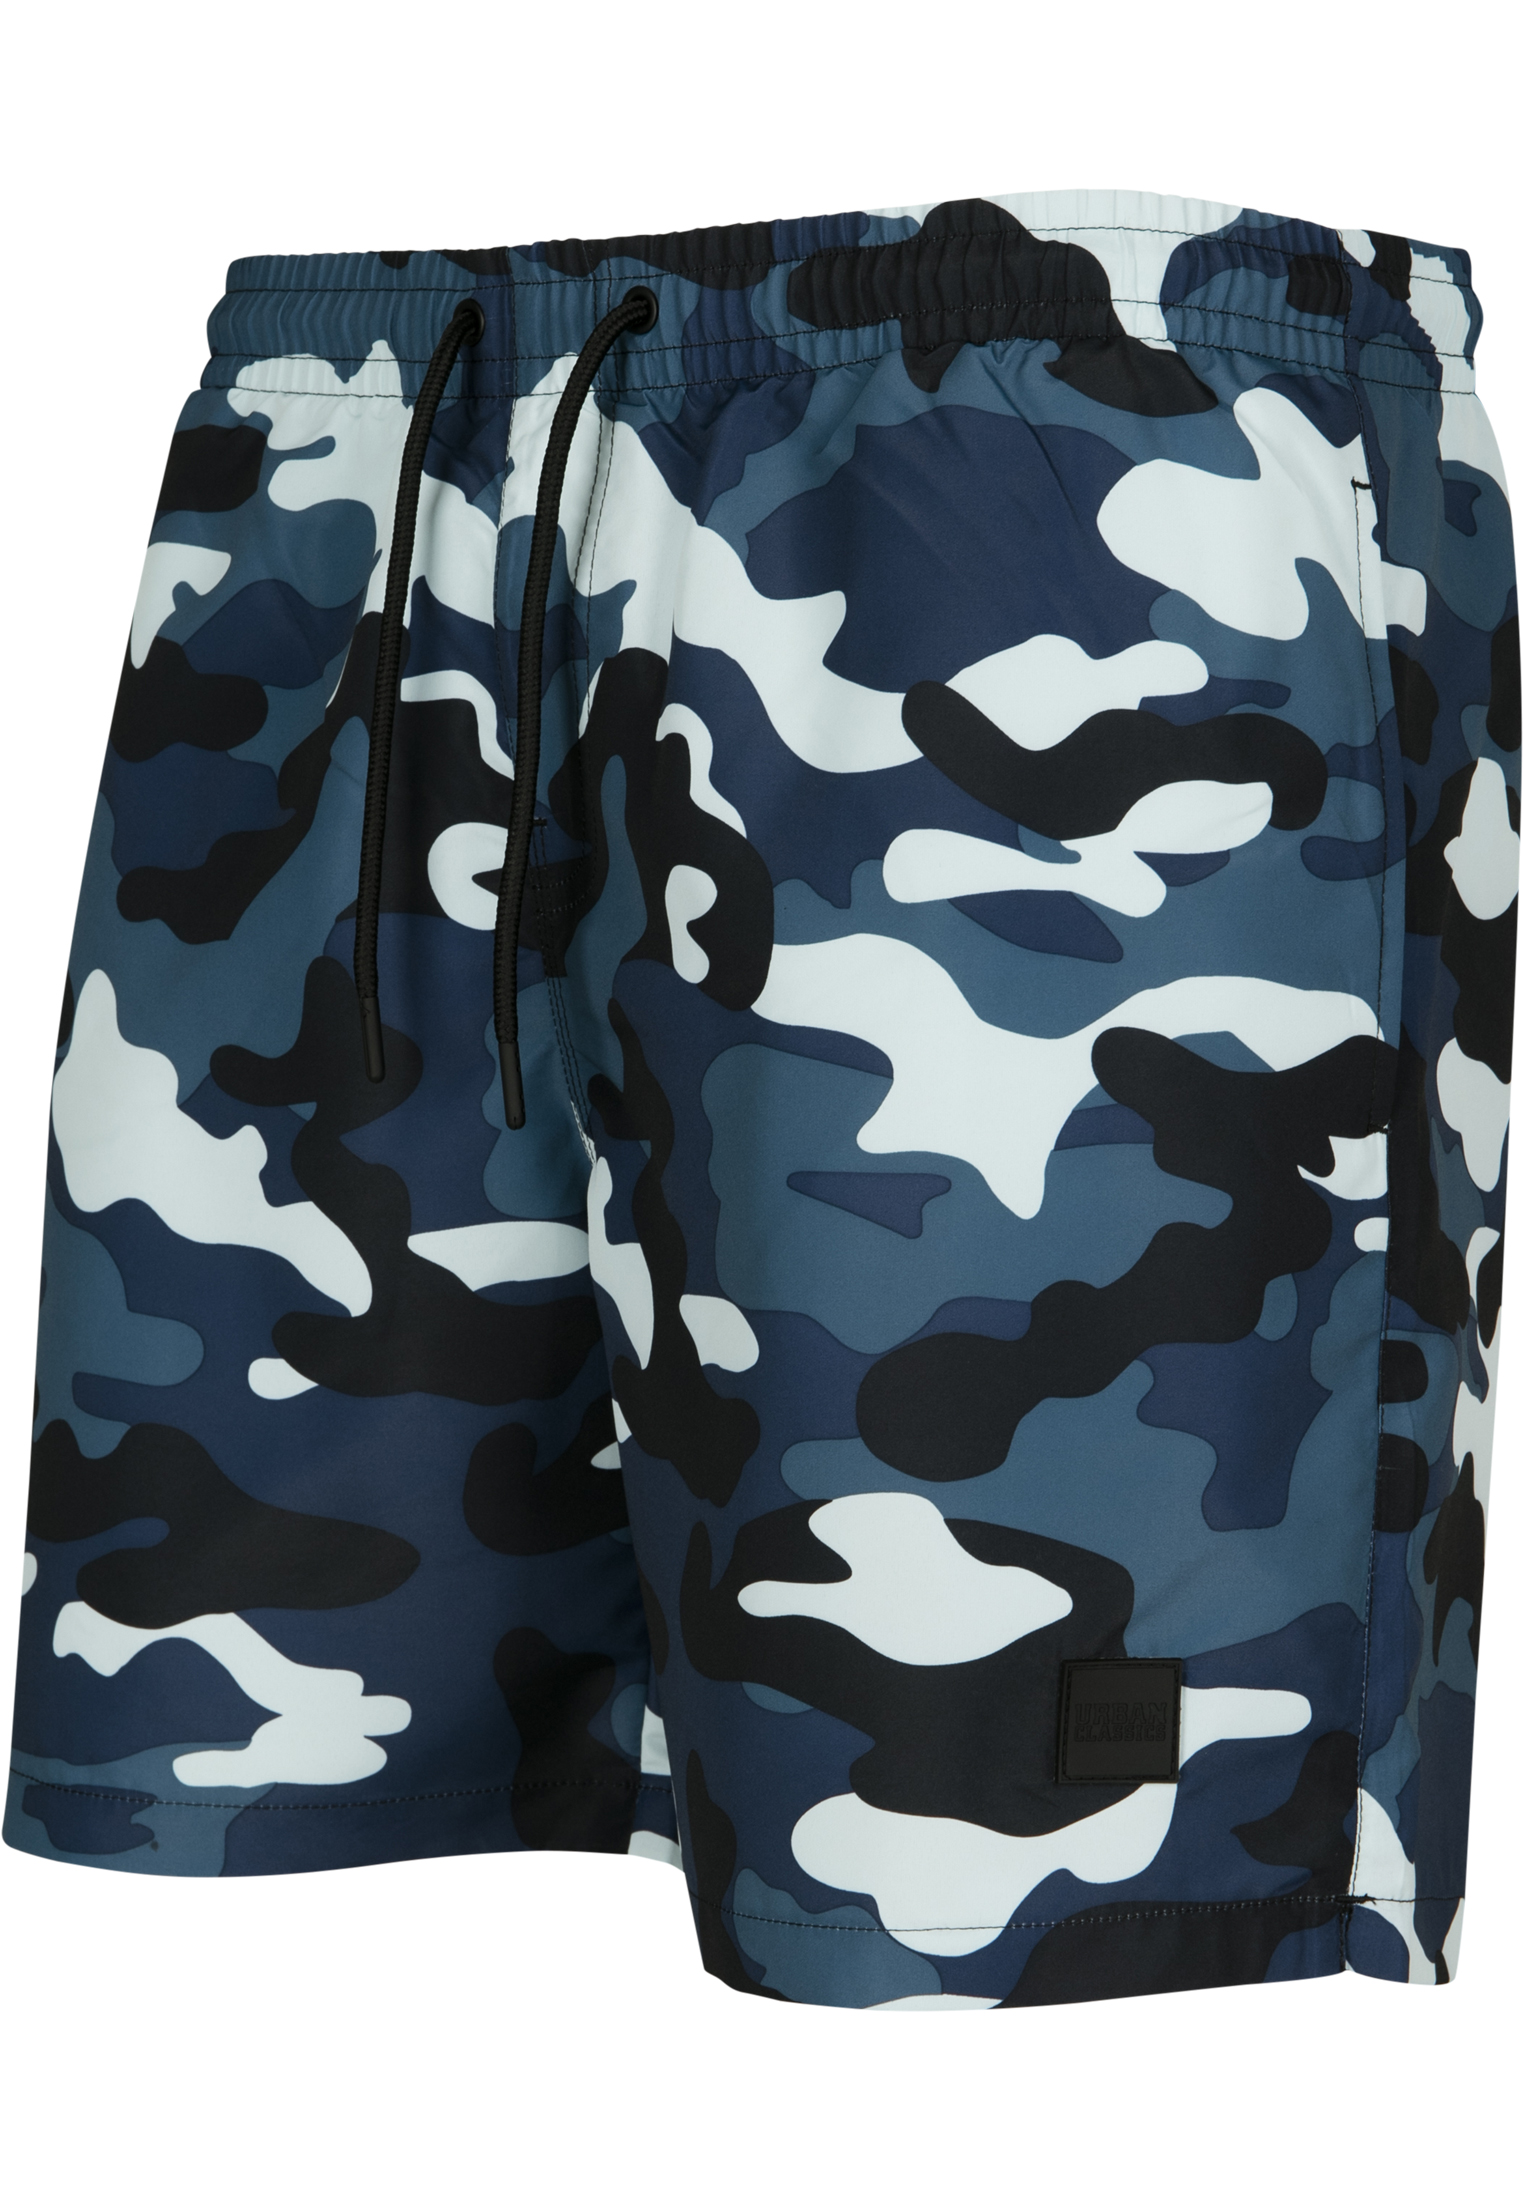 Plus Size Camo Swim Shorts in Farbe blue camo